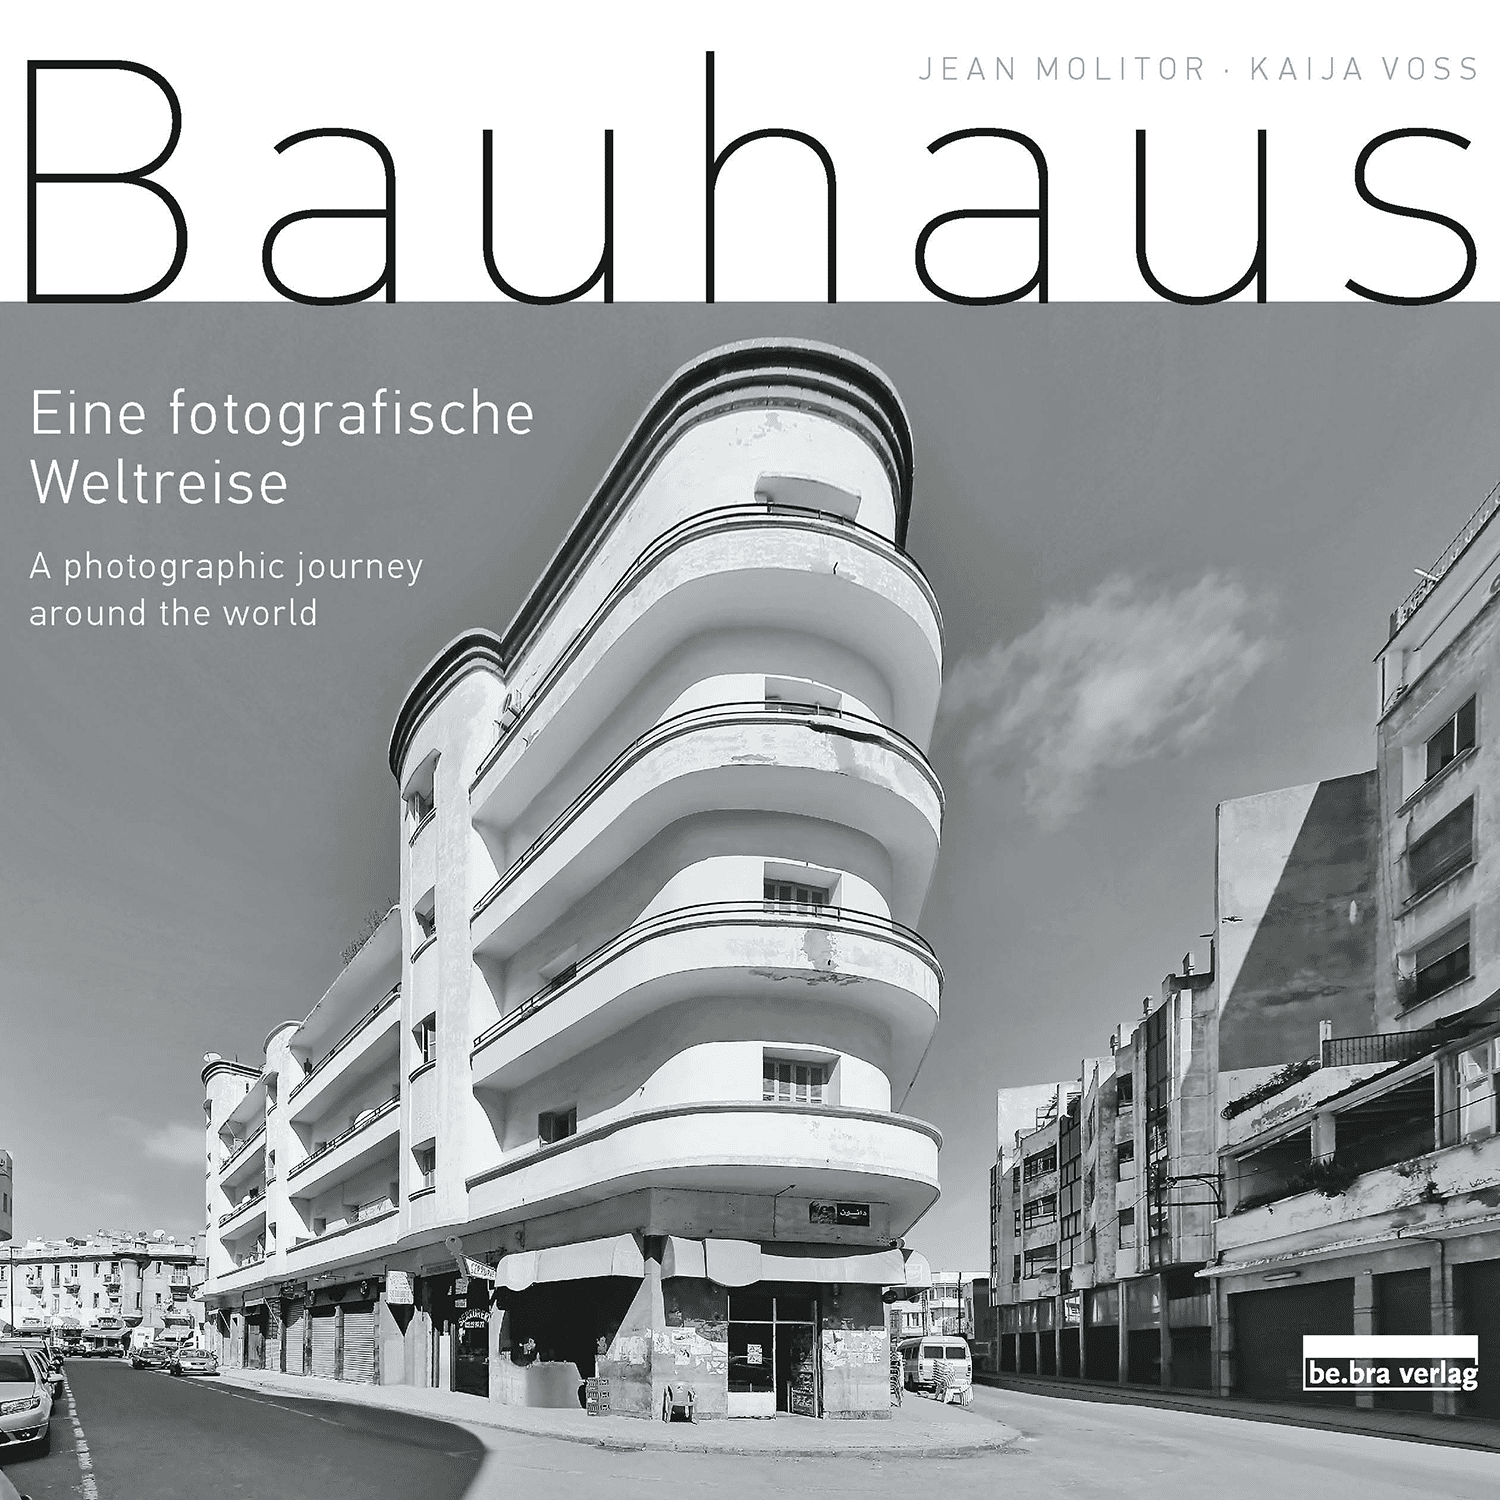 Imagen de Bauhaus - Un viaje fotográfico alrededor del mundo